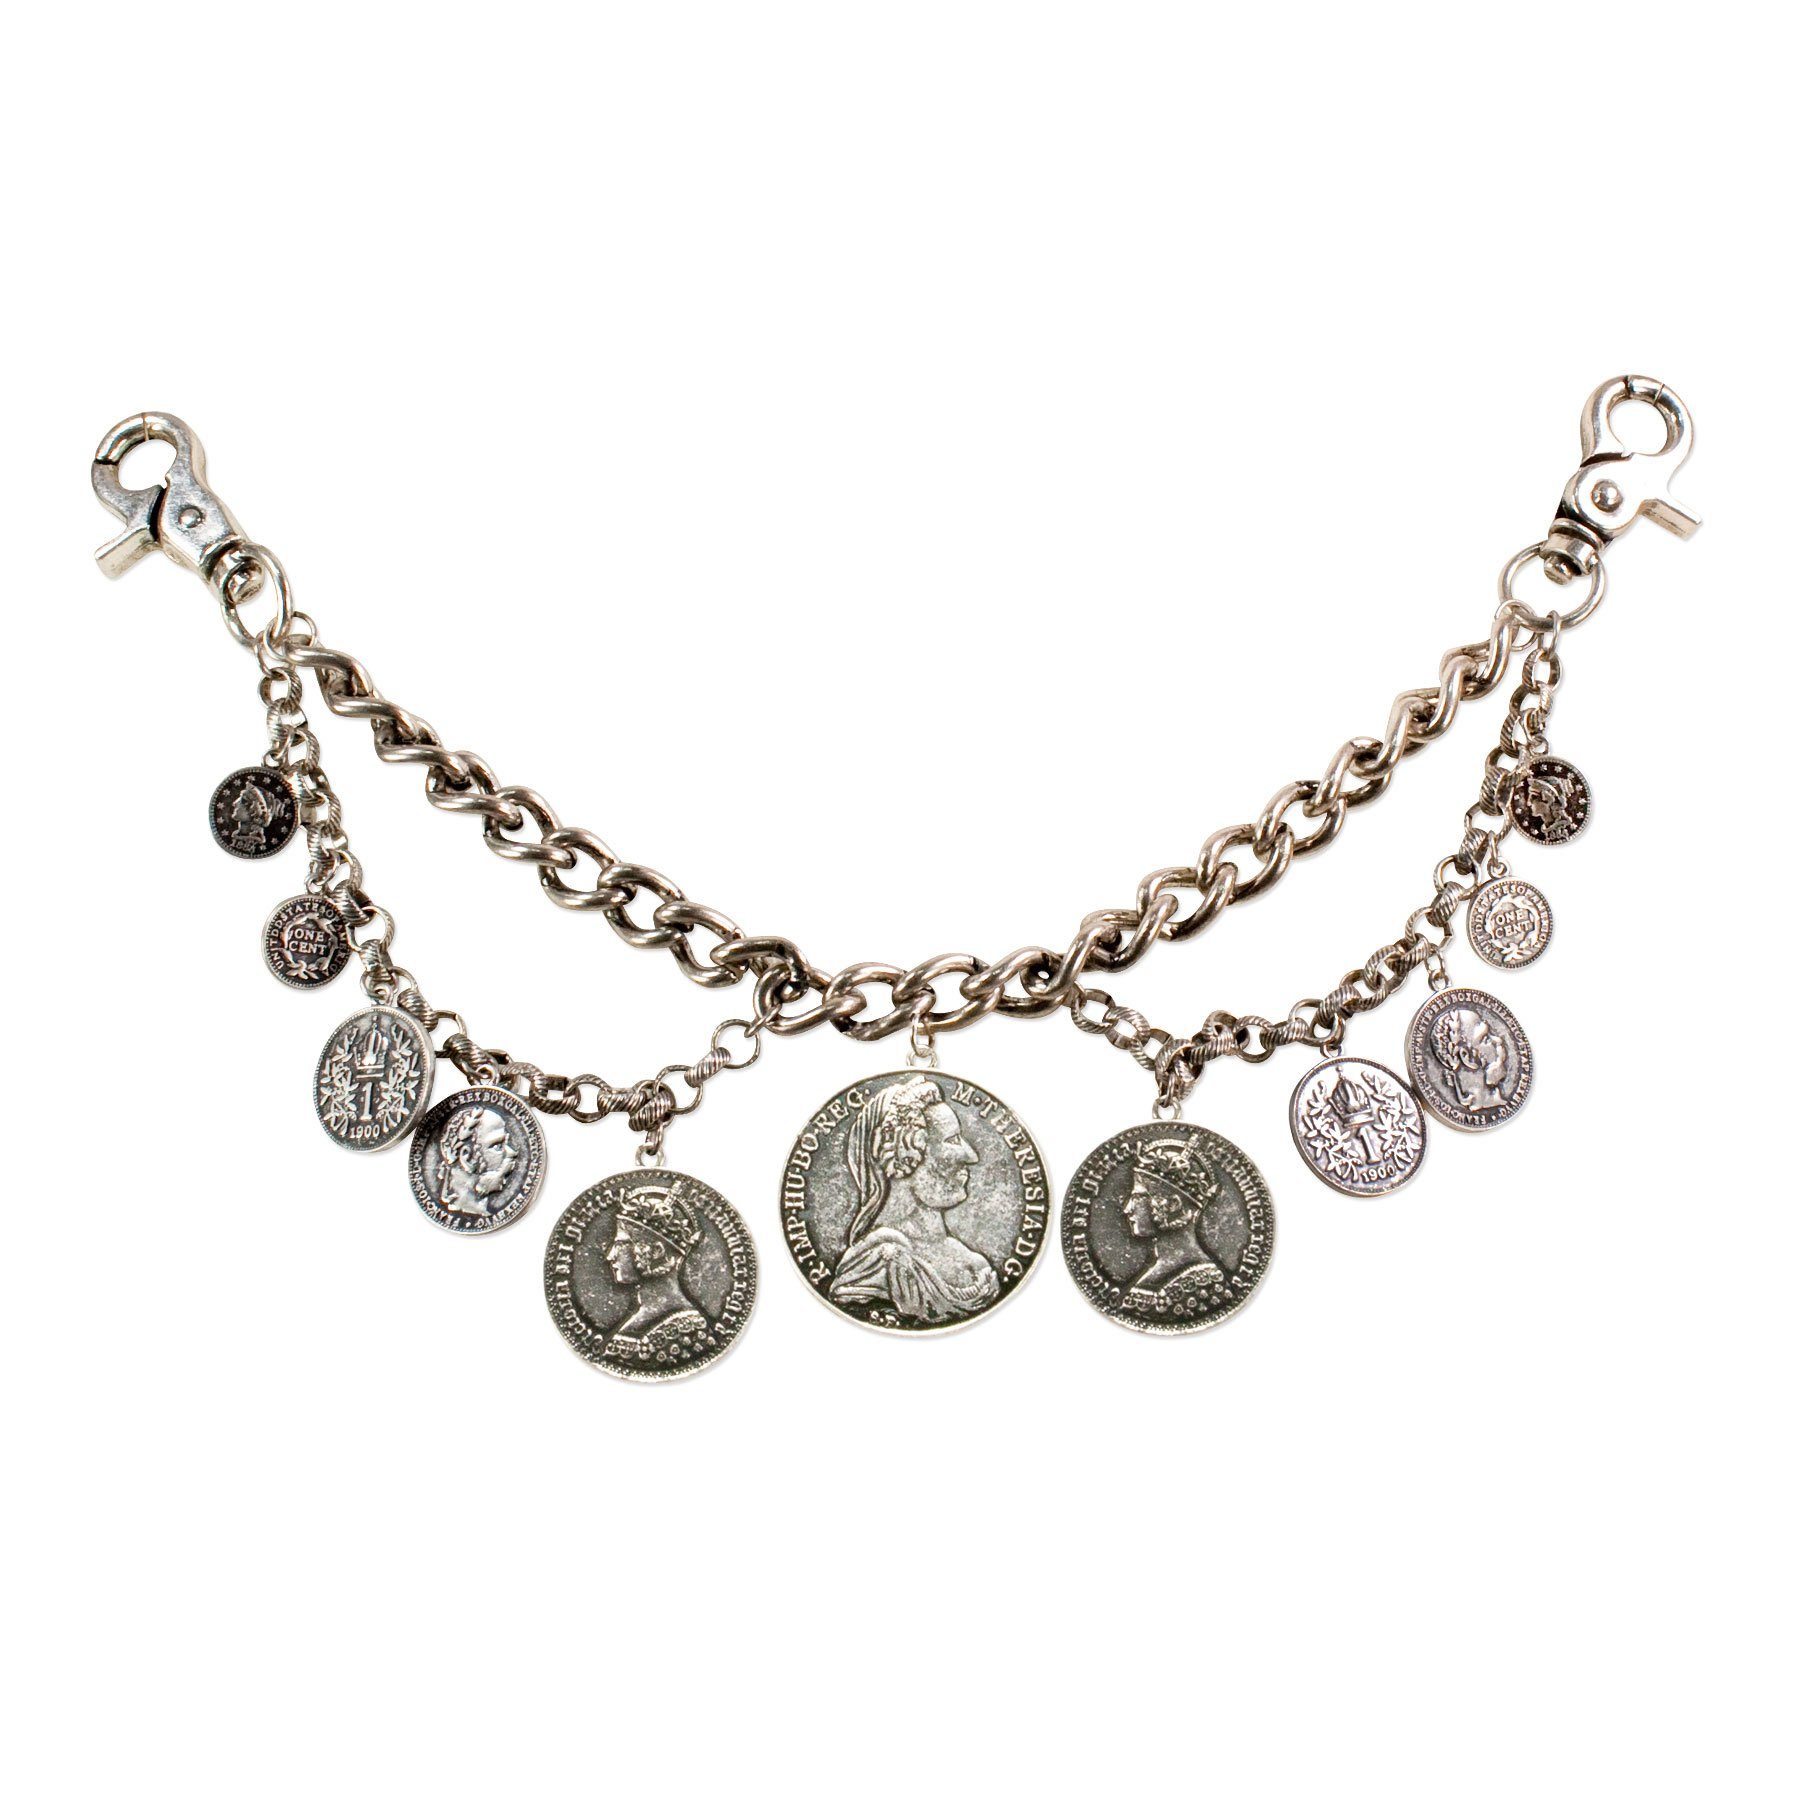 Alpenflüstern Kette mit Anhänger Trachten-Charivari Münzen (antik-silber-farben), - Hochwertiger Herren-Trachtenschmuck mit Münz-Anhängern für die Lederhose